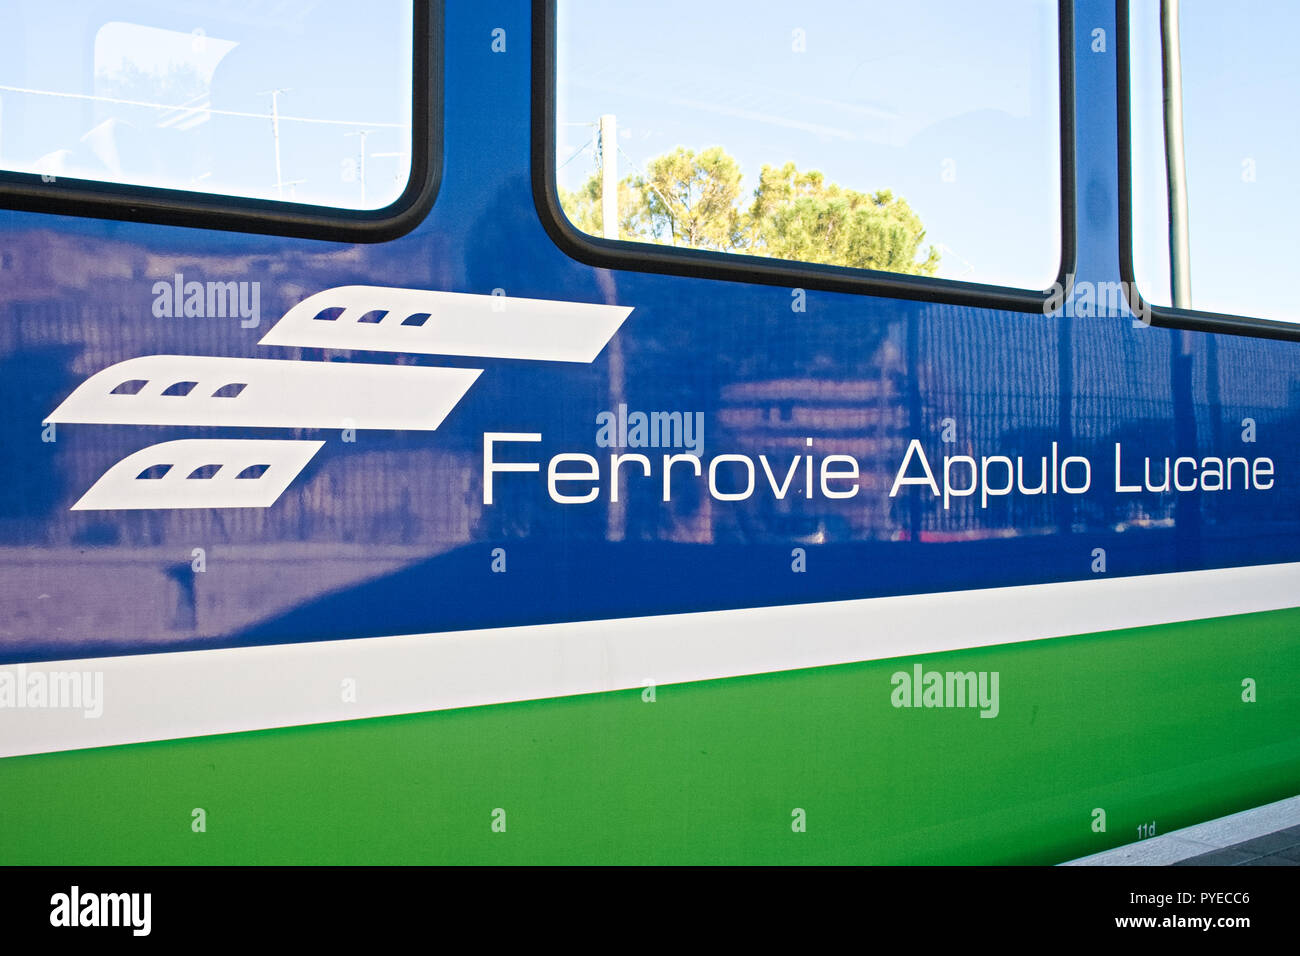 FAL, Ferrovie Appulo Lucane, italienischen Eisenbahnnetz, Züge verbinden  Bari, Apulien Matera, Basilikata, über Altamura, Gravina und den Park von M  Stockfotografie - Alamy